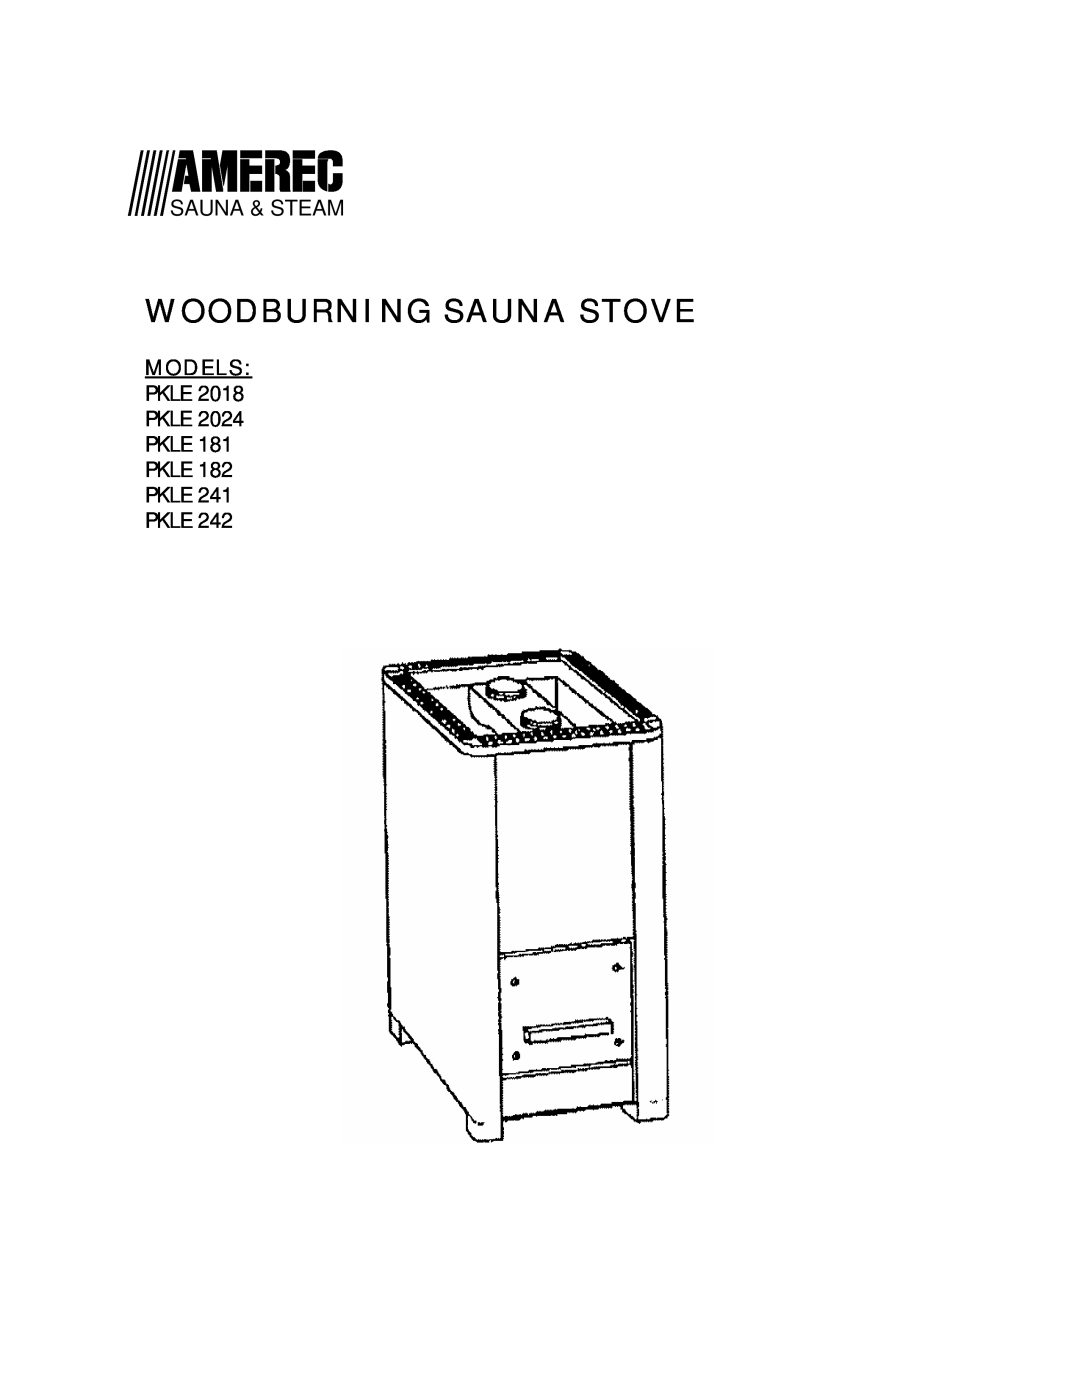 Amerec PKLE 2024, PKLE 242, PKLE 241 manual Woodburning Sauna Stove, Sauna & Steam, Models, Pkle Pkle Pkle Pkle Pkle Pkle 